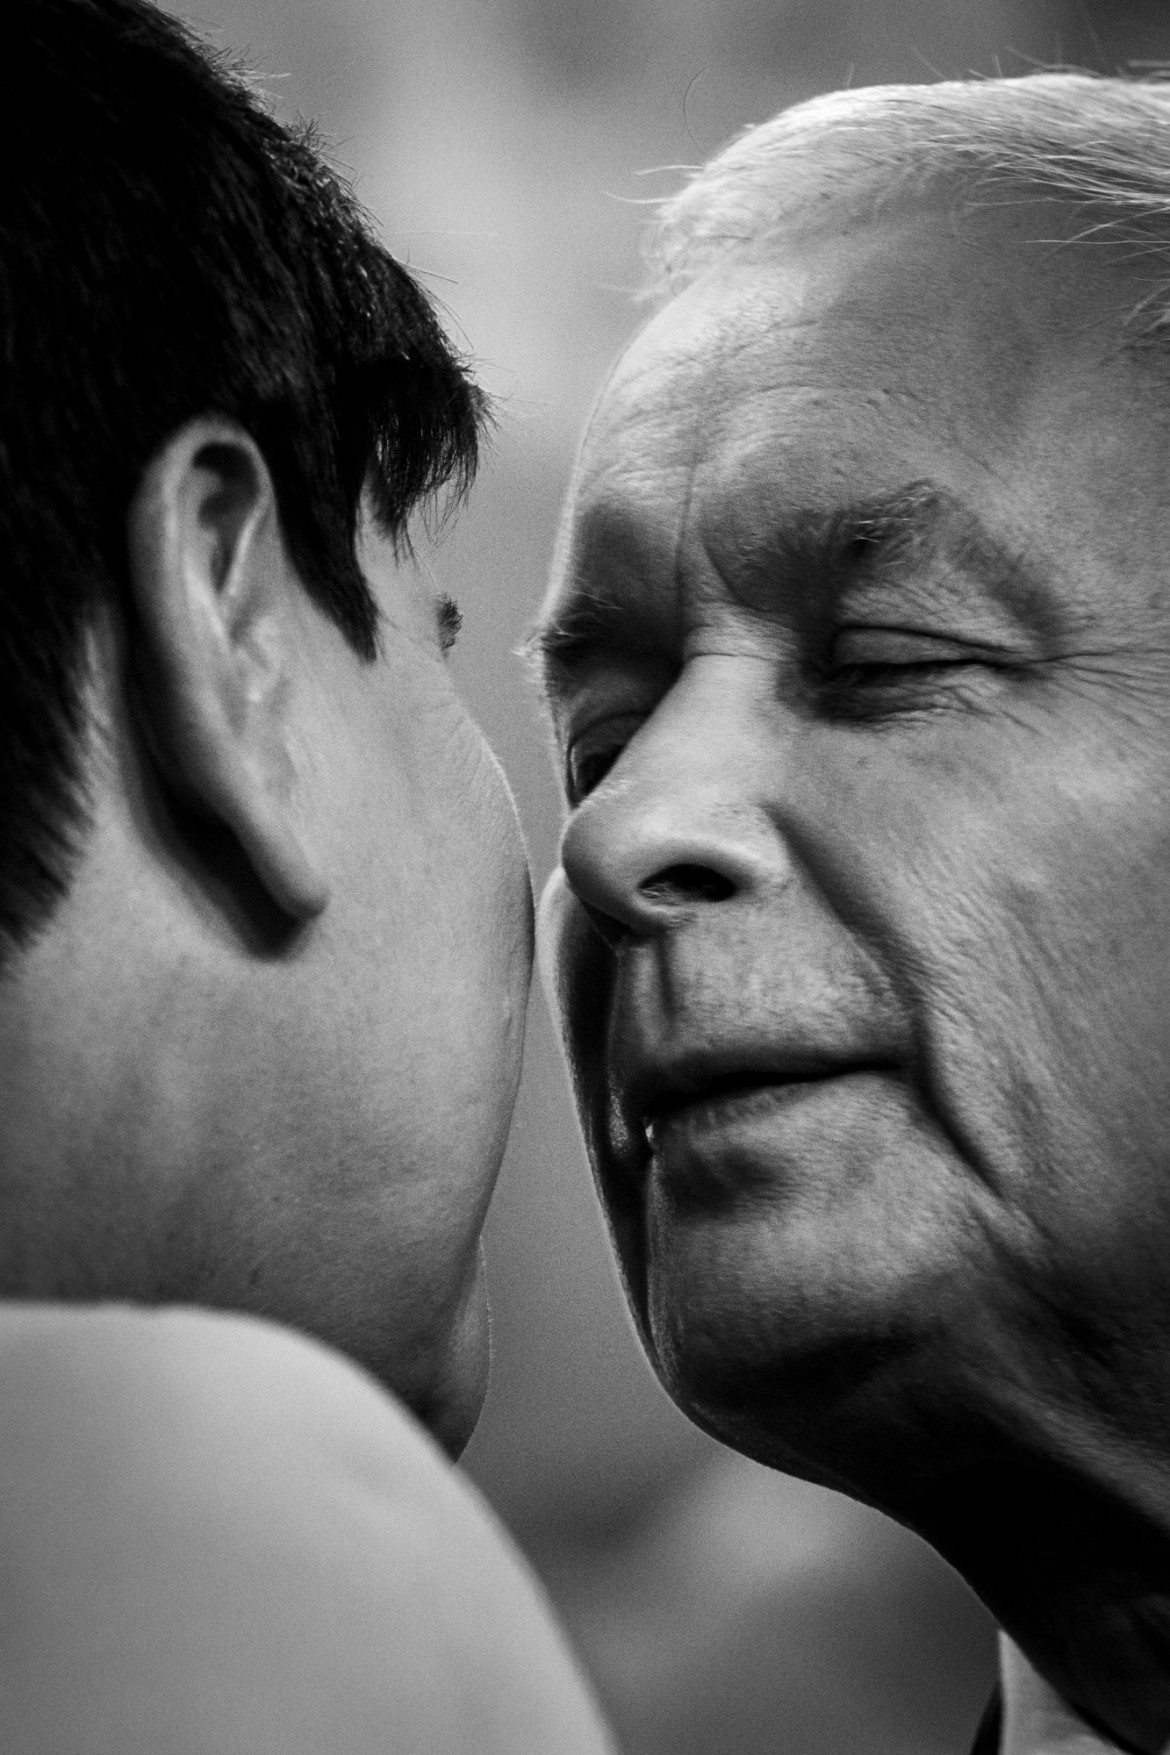 Polityka - Wojciech Grzędziński  - Prezes PiS Jarosław Kaczyński całuje w policzek Premier Beatę Szydło podczas konferencji prasowej w siedzibie PiS wychwalającej dwa lata rządów.